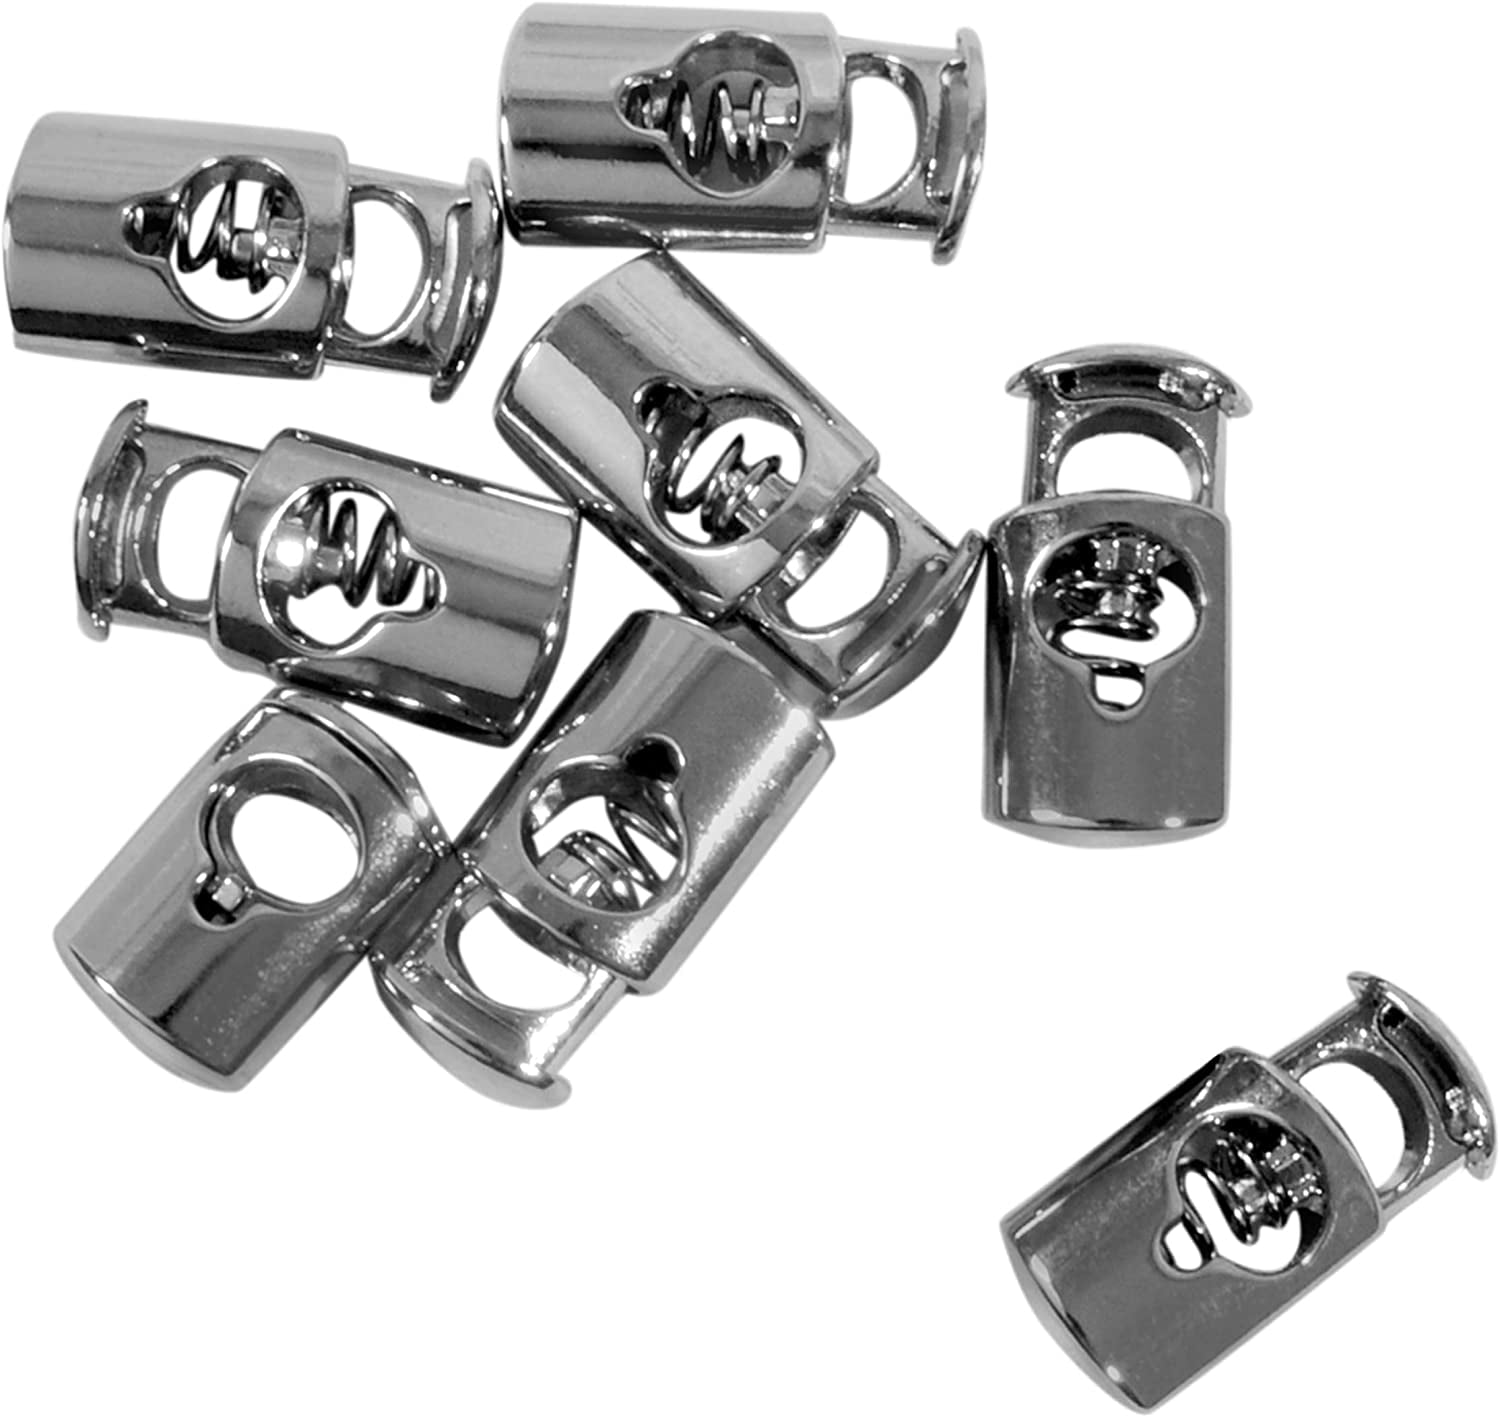 Metal Cord Locks, Gold Toggle Cord Lock,silver Toggle Cord Lock, Strong  Cord Lock, Toggle, Premium Quality Metal Button Style Cord Locks 